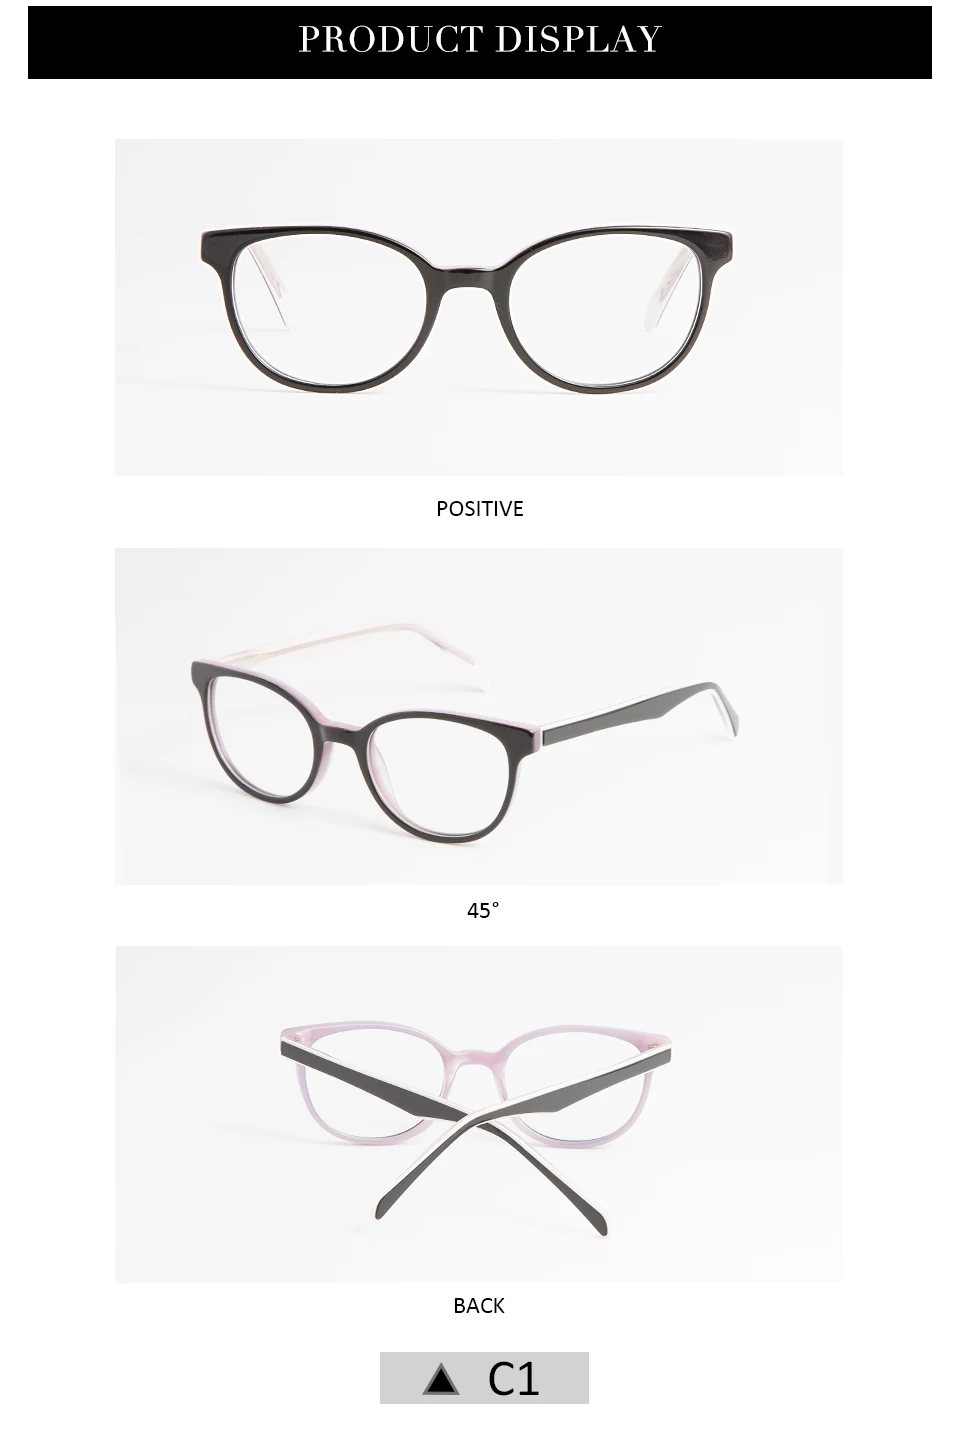 FEIDA, детские оптические очки, оправа для мальчиков и девочек, близорукость, очки по рецепту, оправа для детских очков, студенческие прозрачные очки